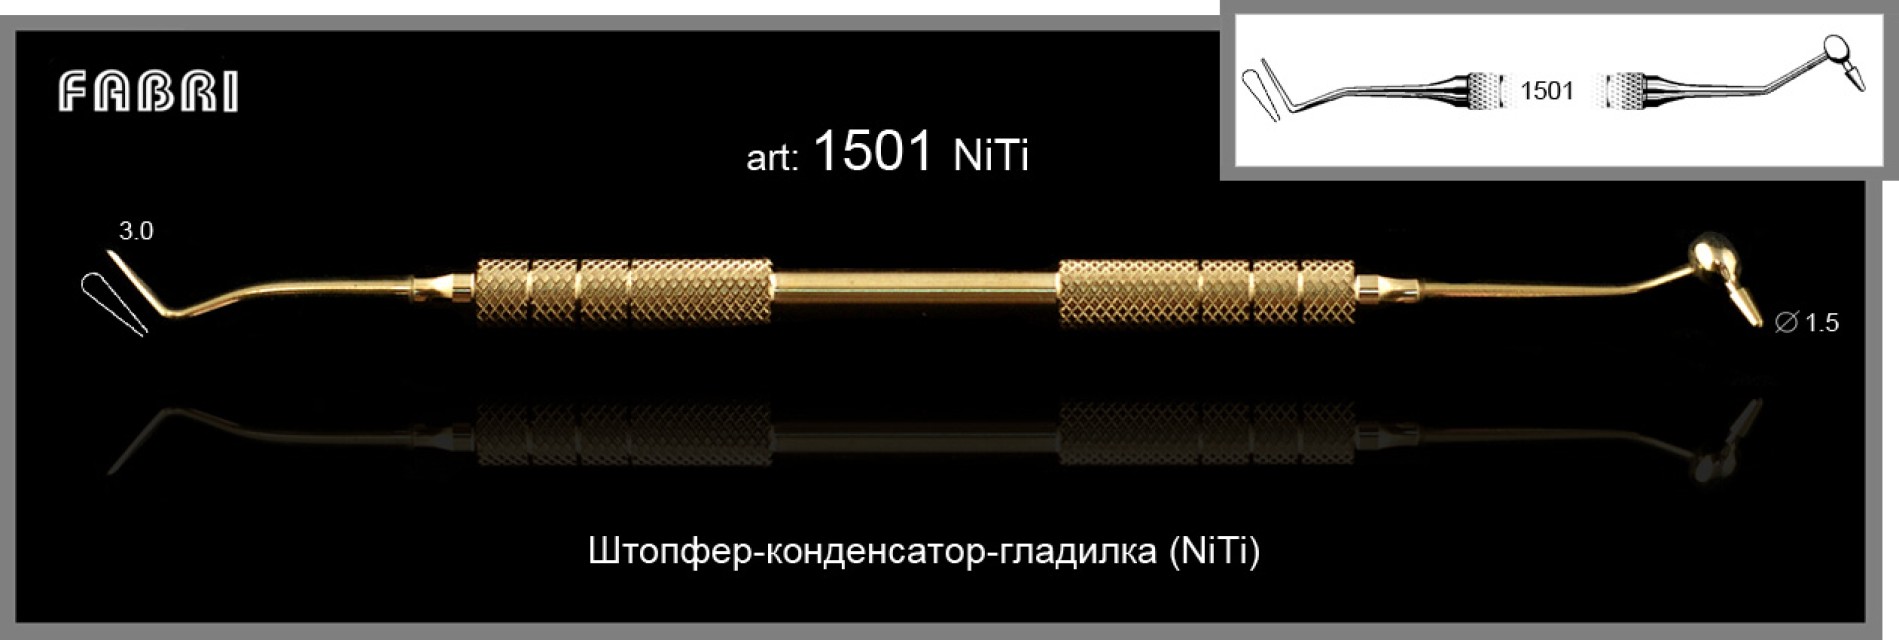 Штопфер-конденсатор-гладилка NITI  1501